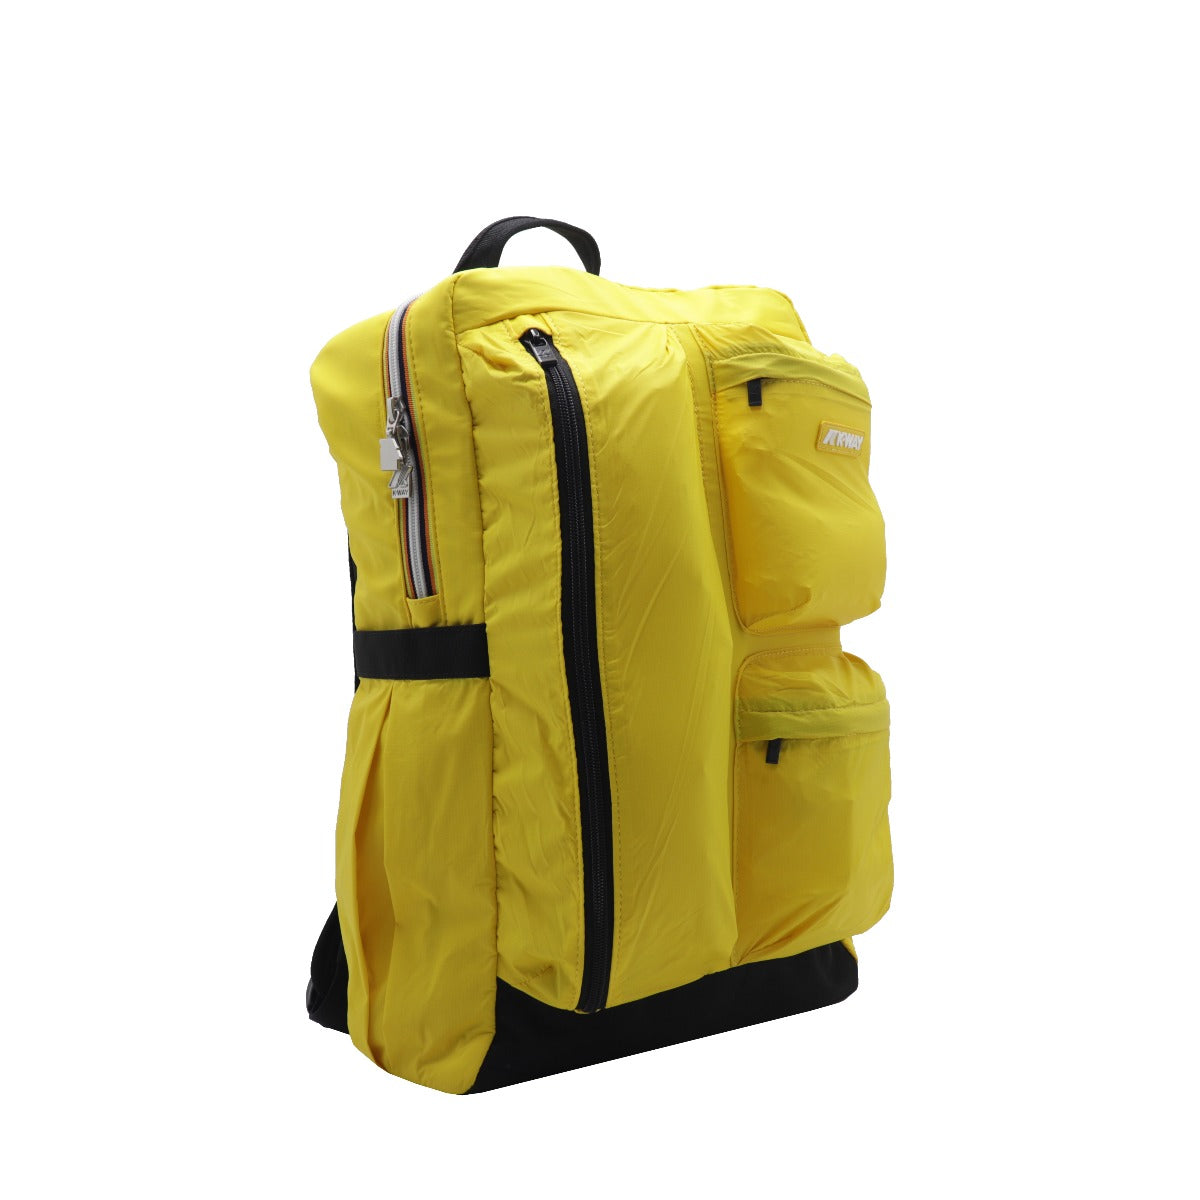 K-Way Ambert Yellow Backpack